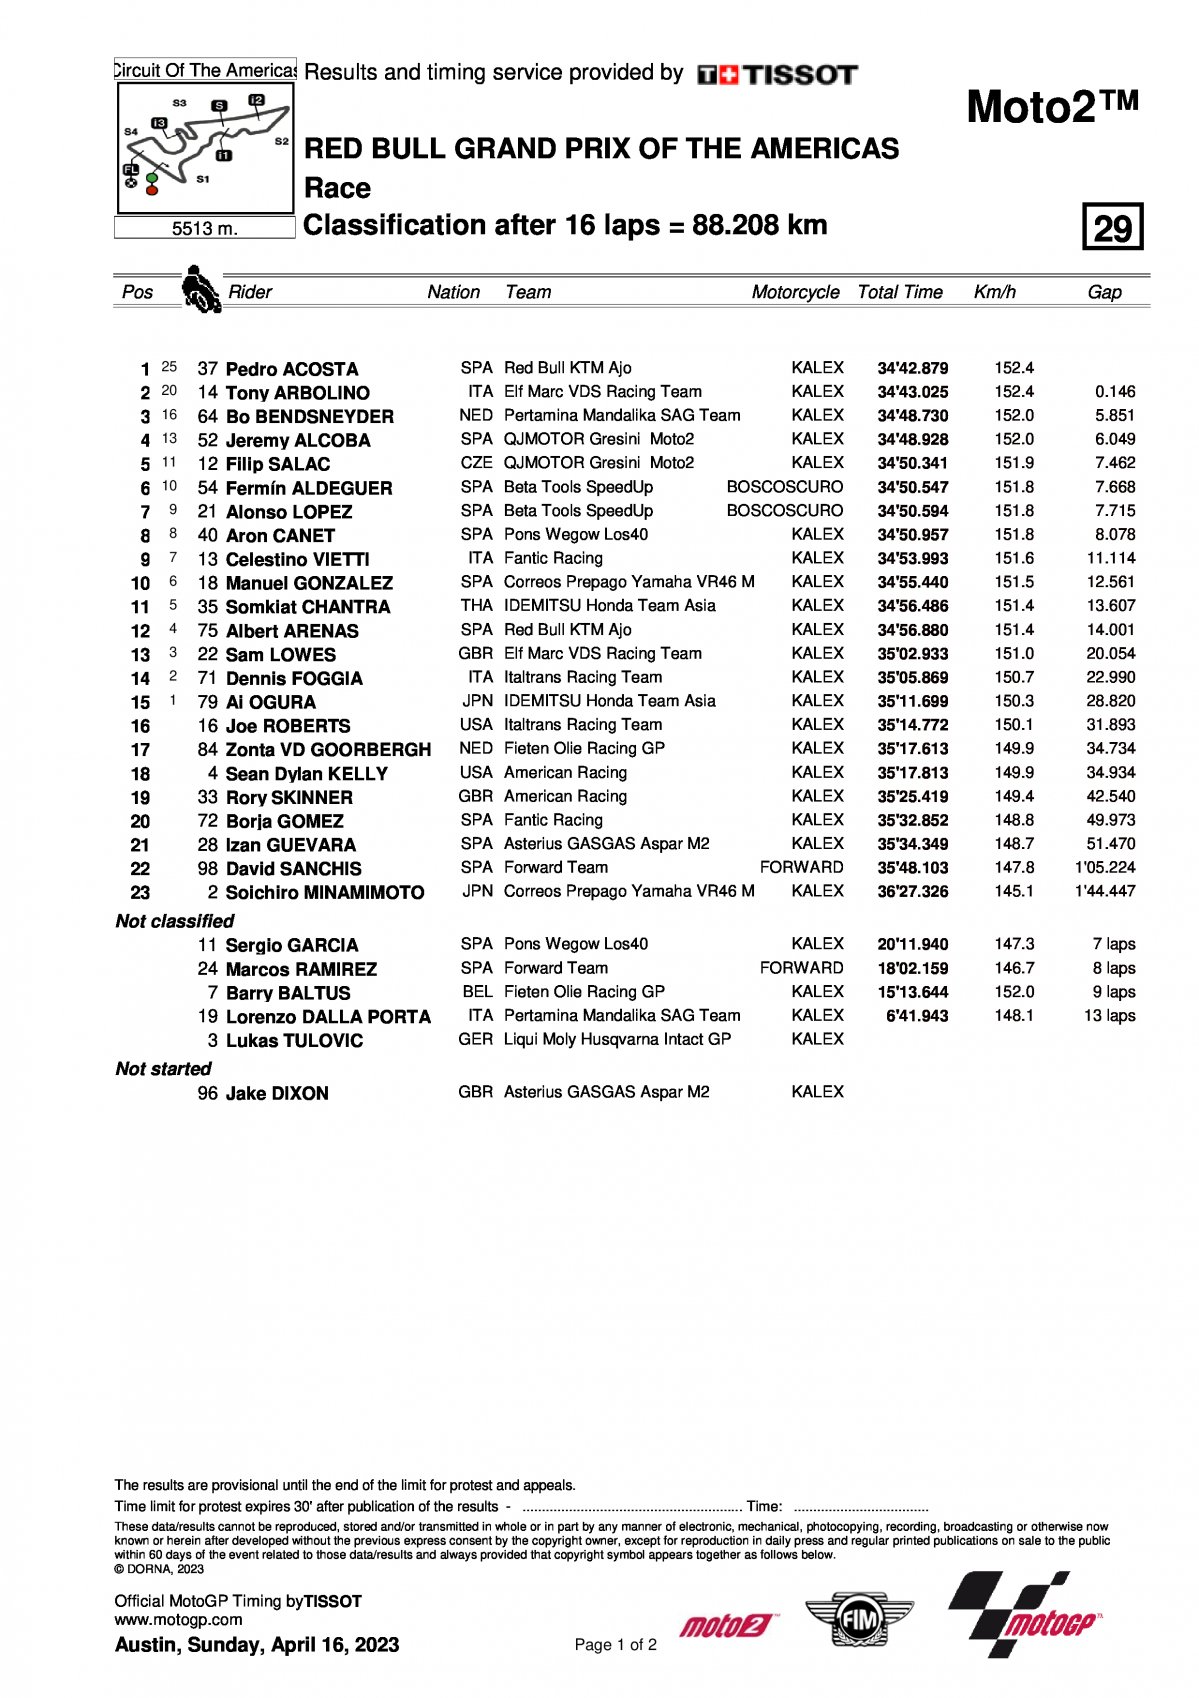 Результаты Гран-При Америк (AmericasGP) Moto2 (16/04/2023)